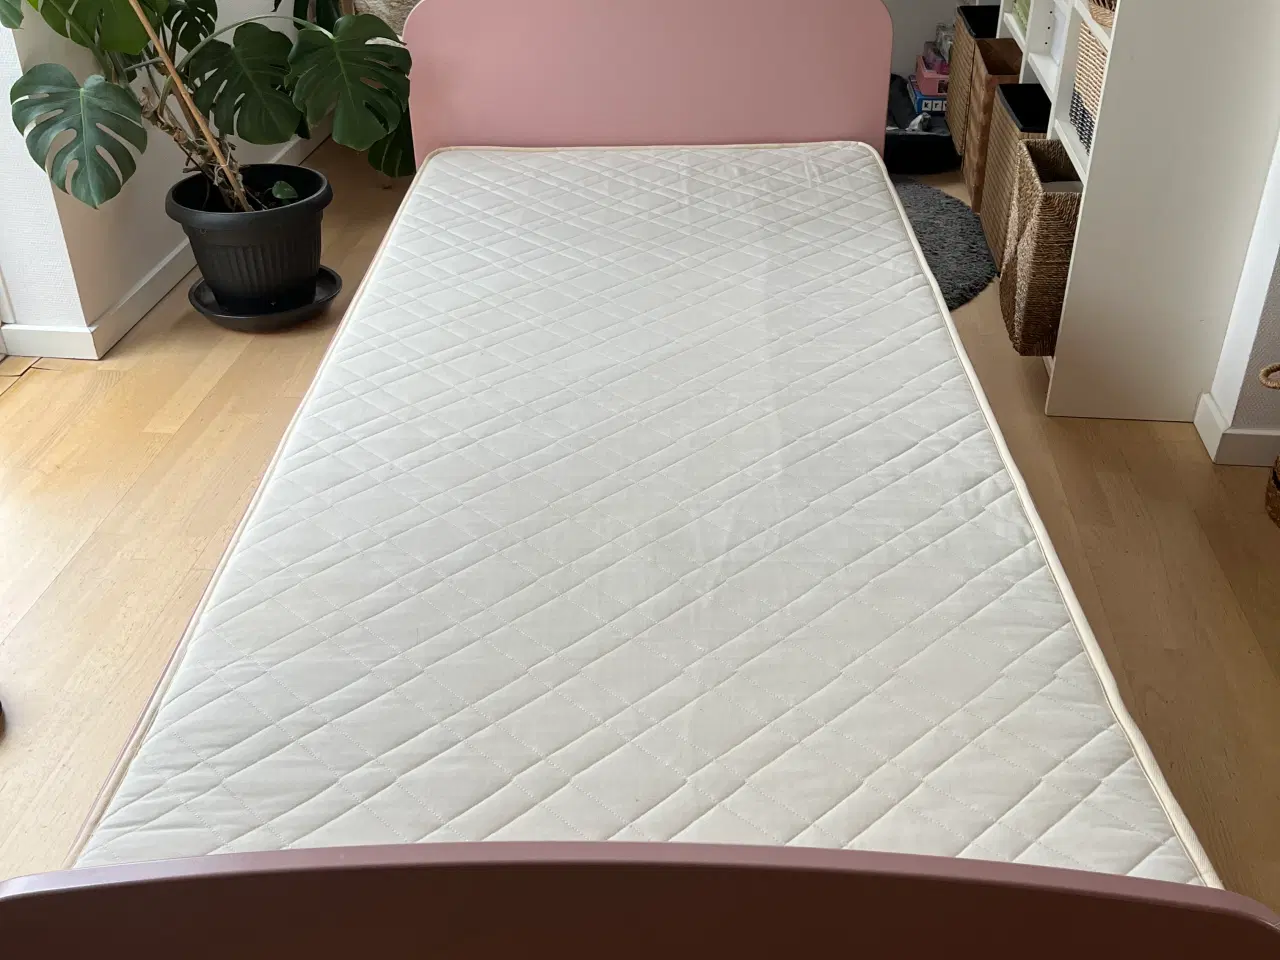 Billede 1 - Næsten ubrugt Flexa-seng med allergi-venlig madras